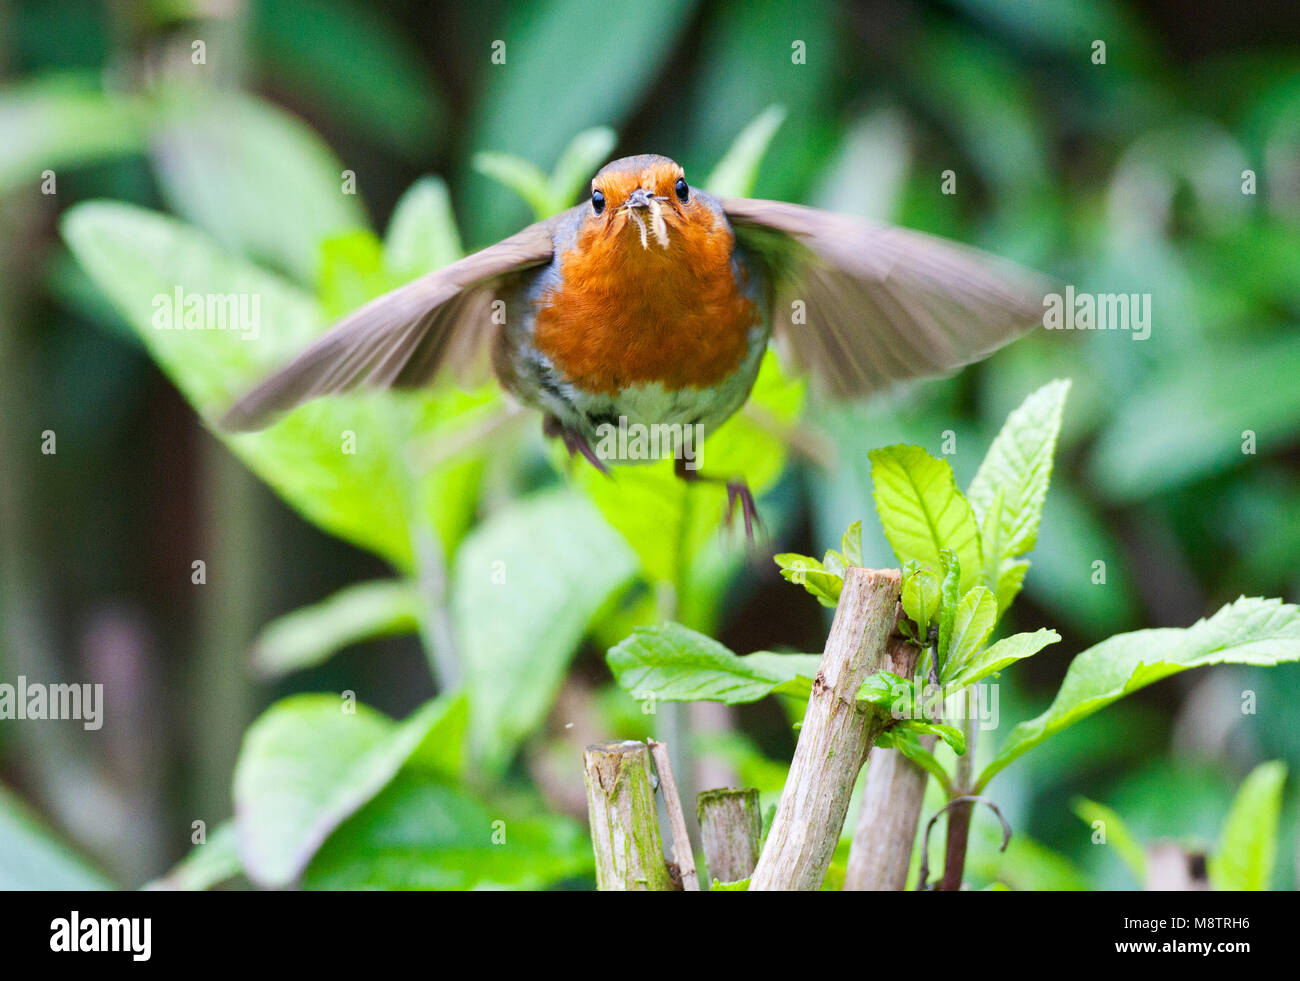 Roodborst vliegend naar zijn nest; European Robin flying towards its nest Stock Photo